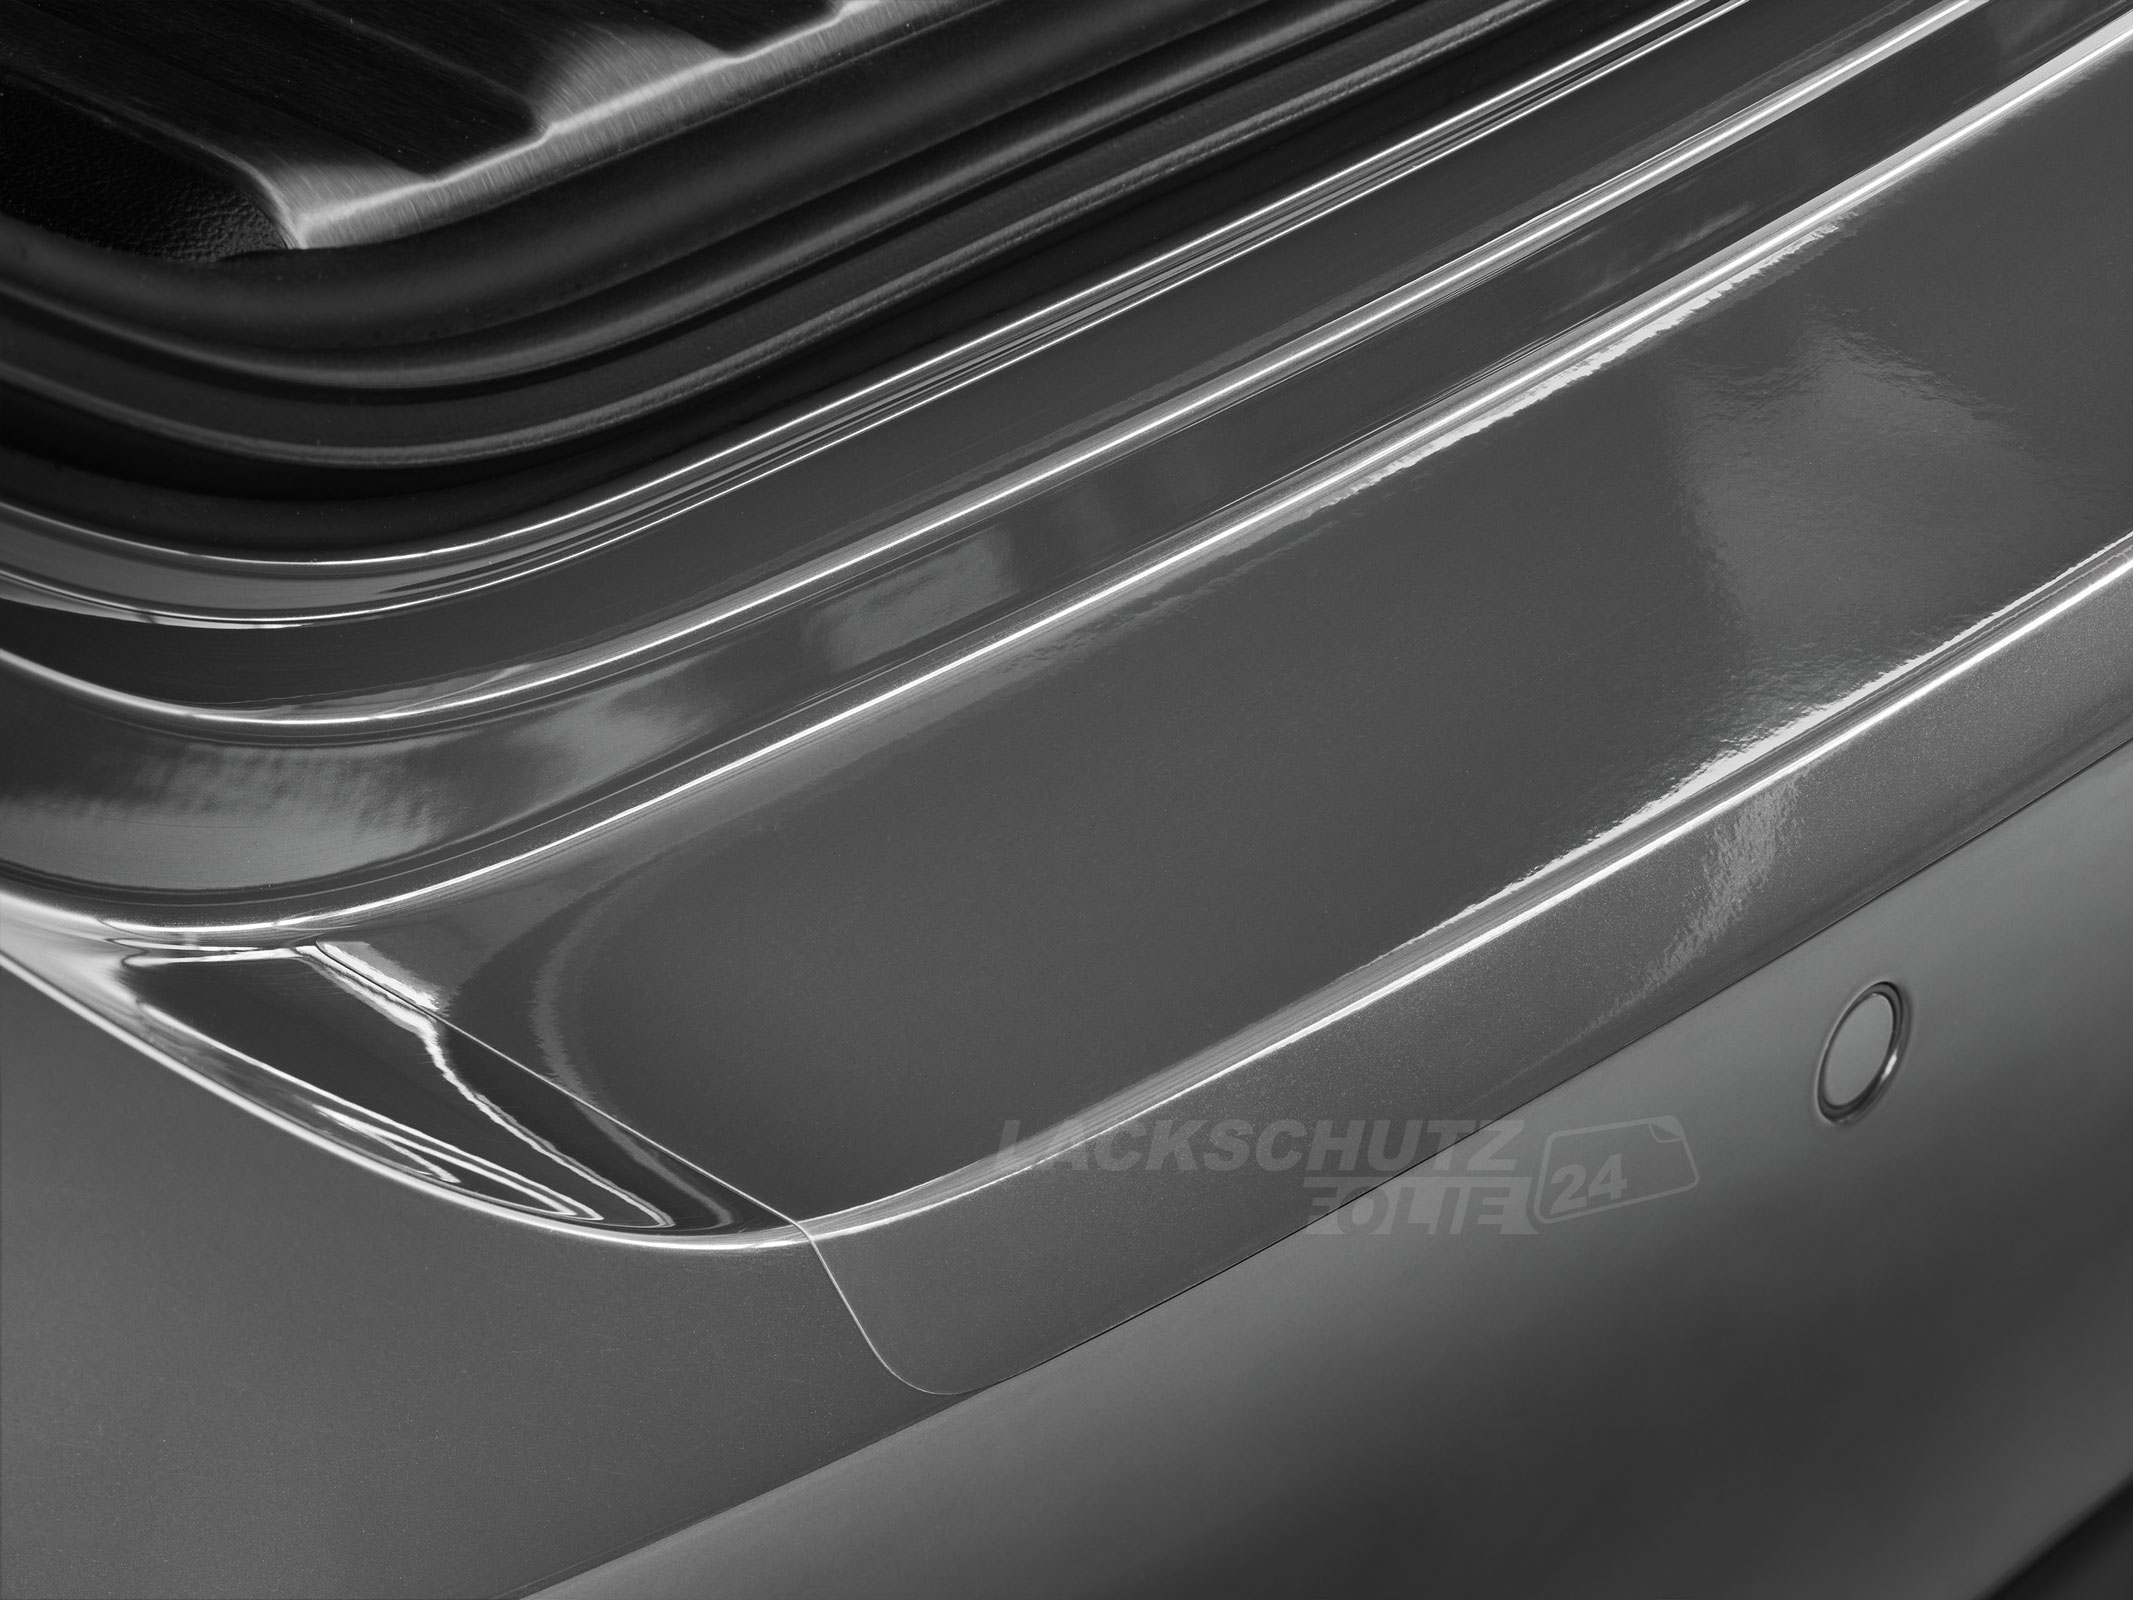 Ladekantenschutzfolie - Transparent Glatt Hochglänzend 150 µm stark für Mitsubishi ASX 1. / 2. Facelift, BJ 2010-03/2019